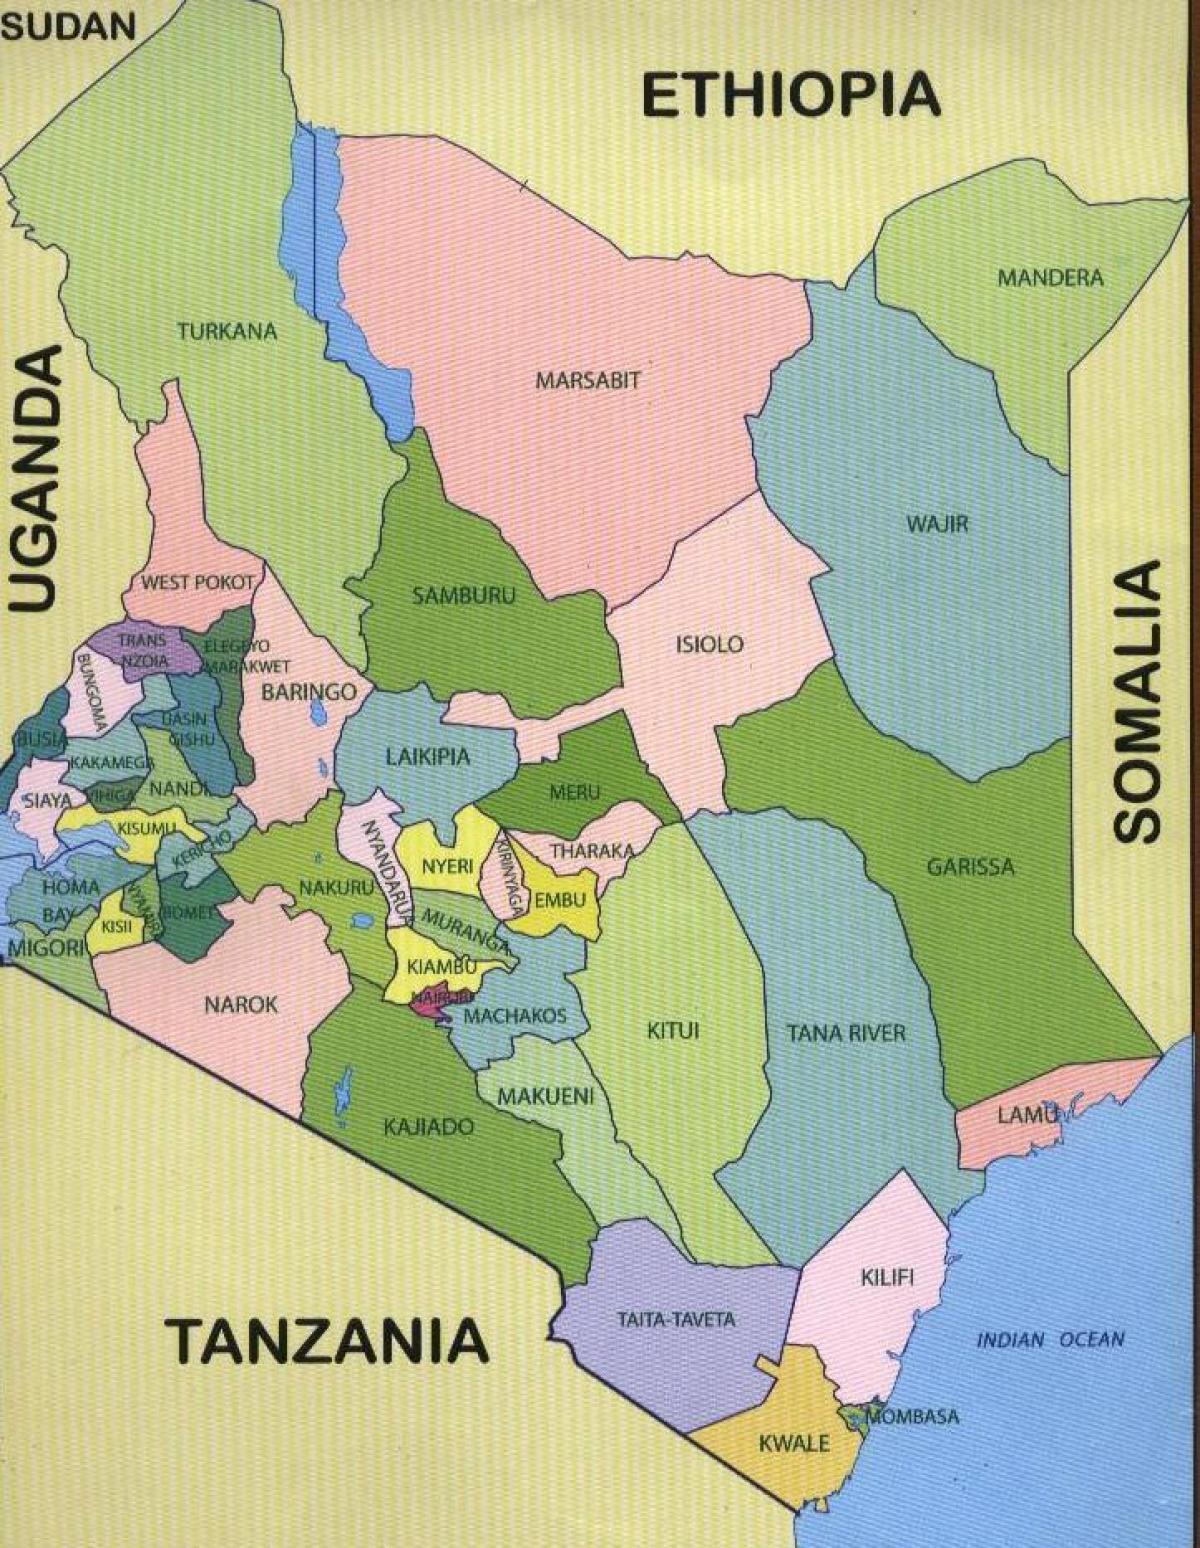 નવી નકશો કેન્યા કાઉન્ટીઓ